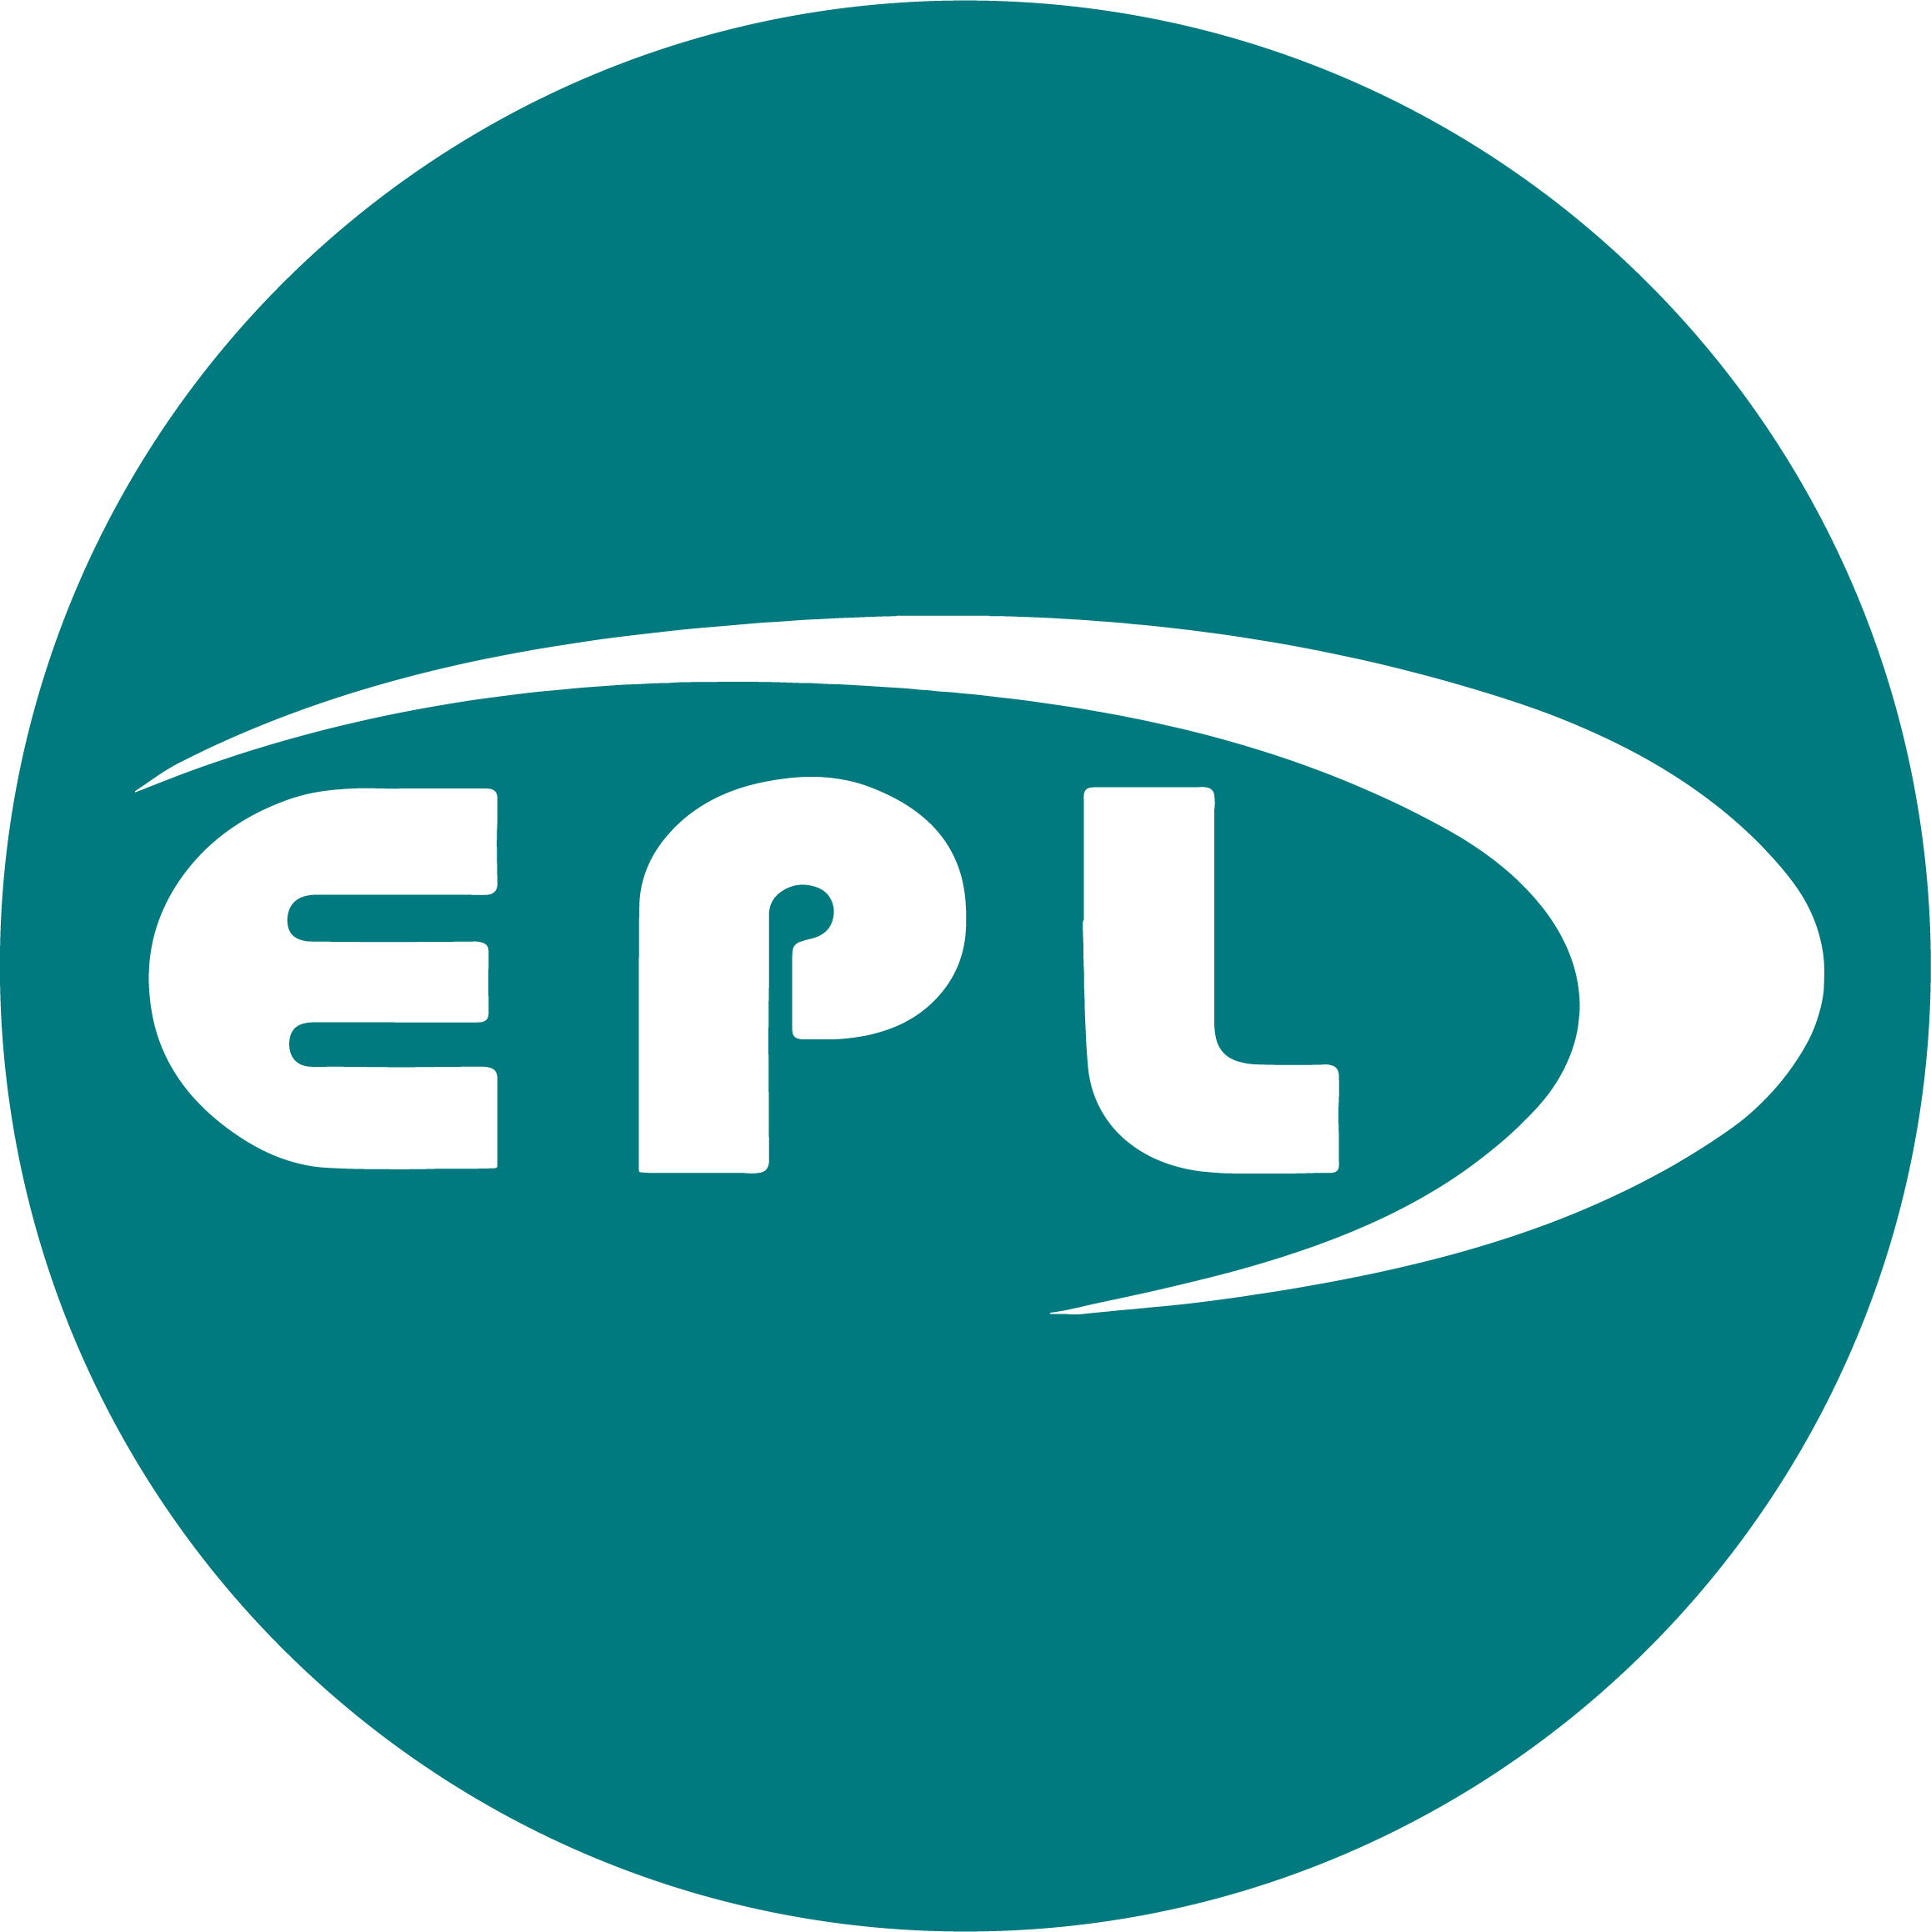 EPL circular logo.png